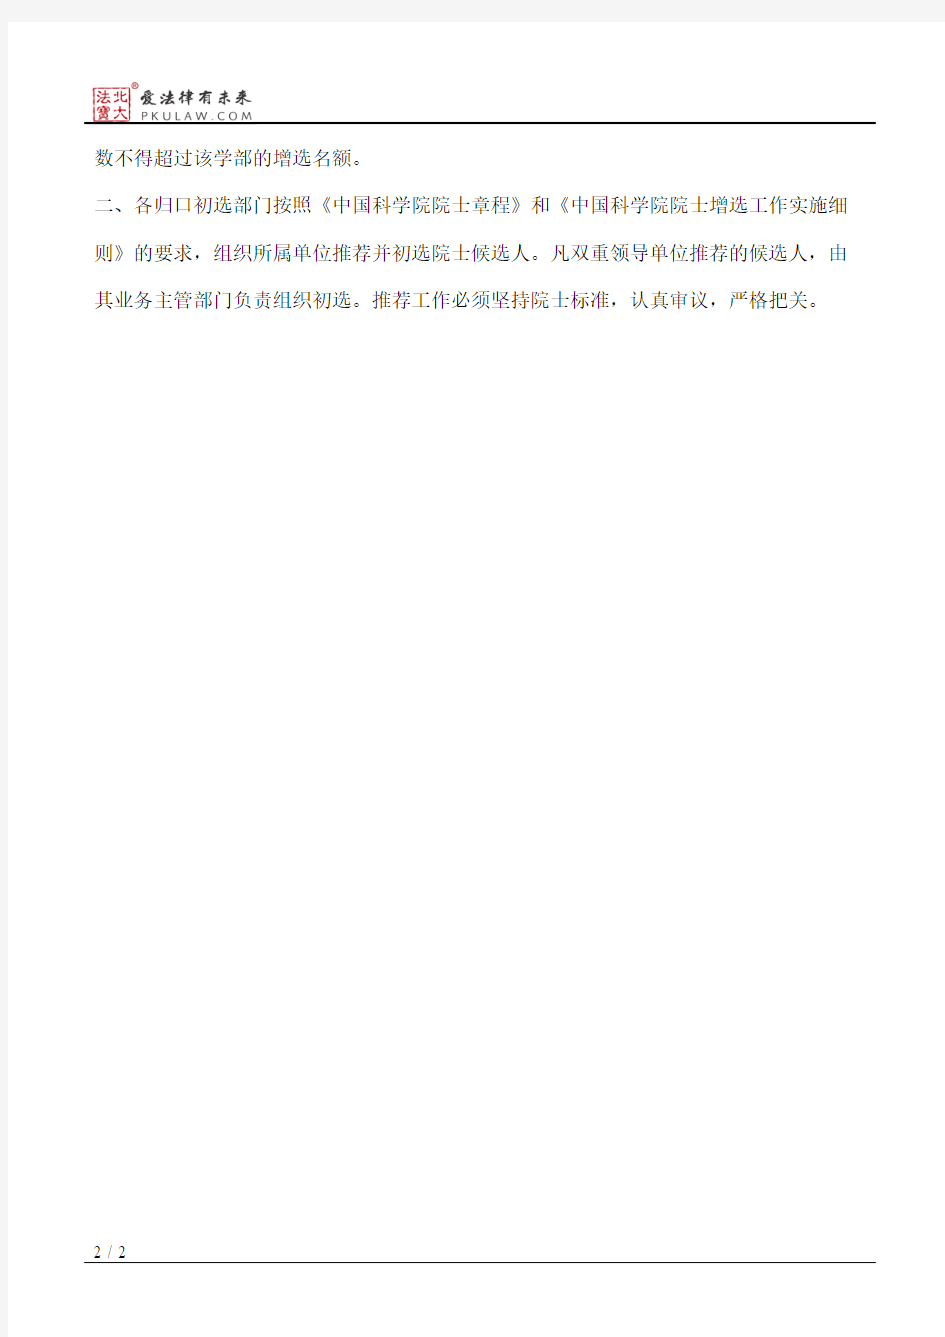 中国科学院关于推荐和初选中国科学院院士候选人的通知(2010)